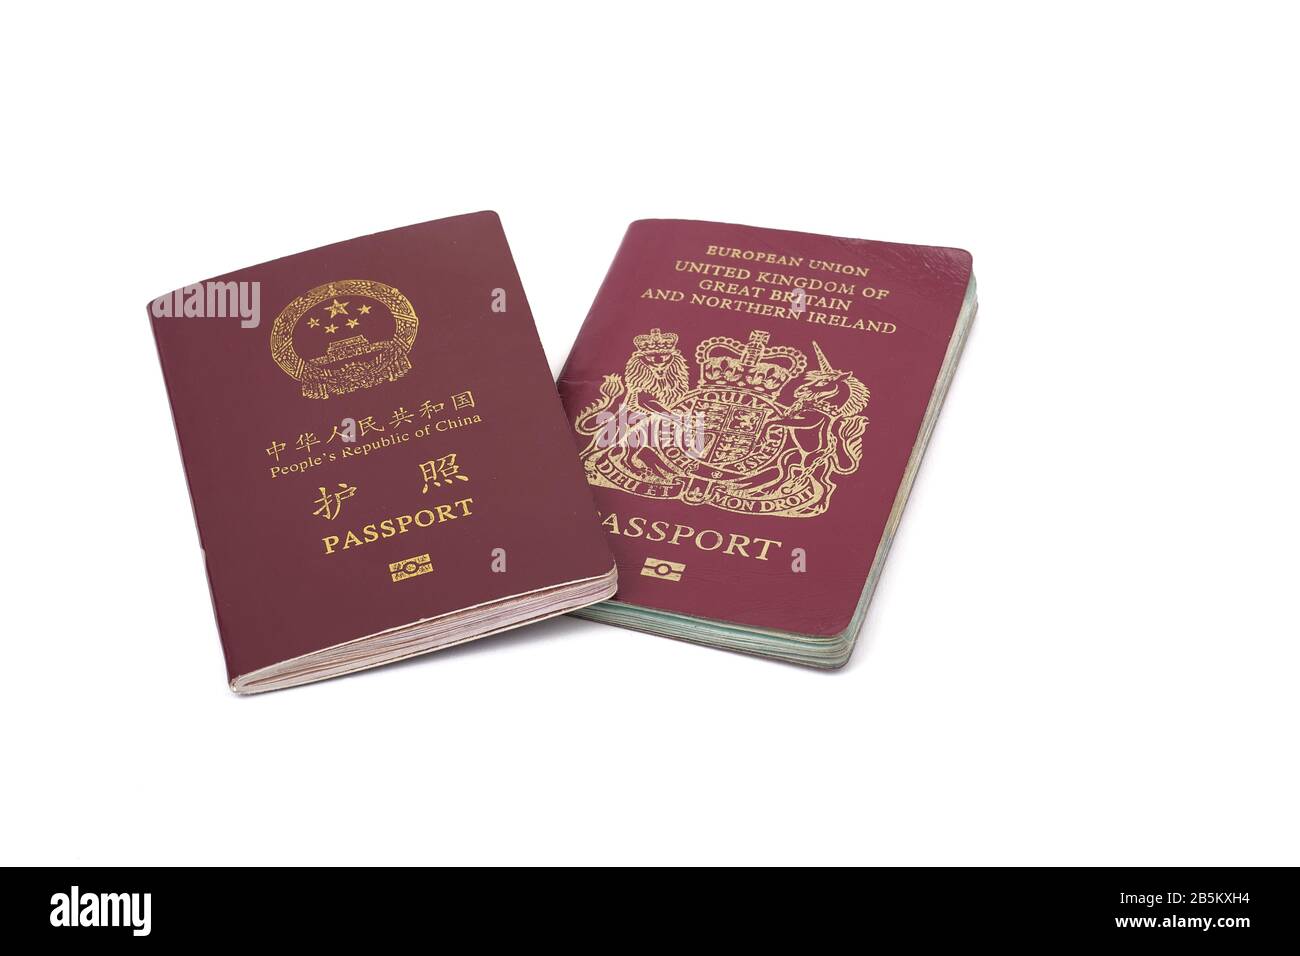 Passaporto della Repubblica popolare cinese e passaporto dell'Unione europea Regno Unito di Gran Bretagna e Irlanda del Nord insieme Foto Stock